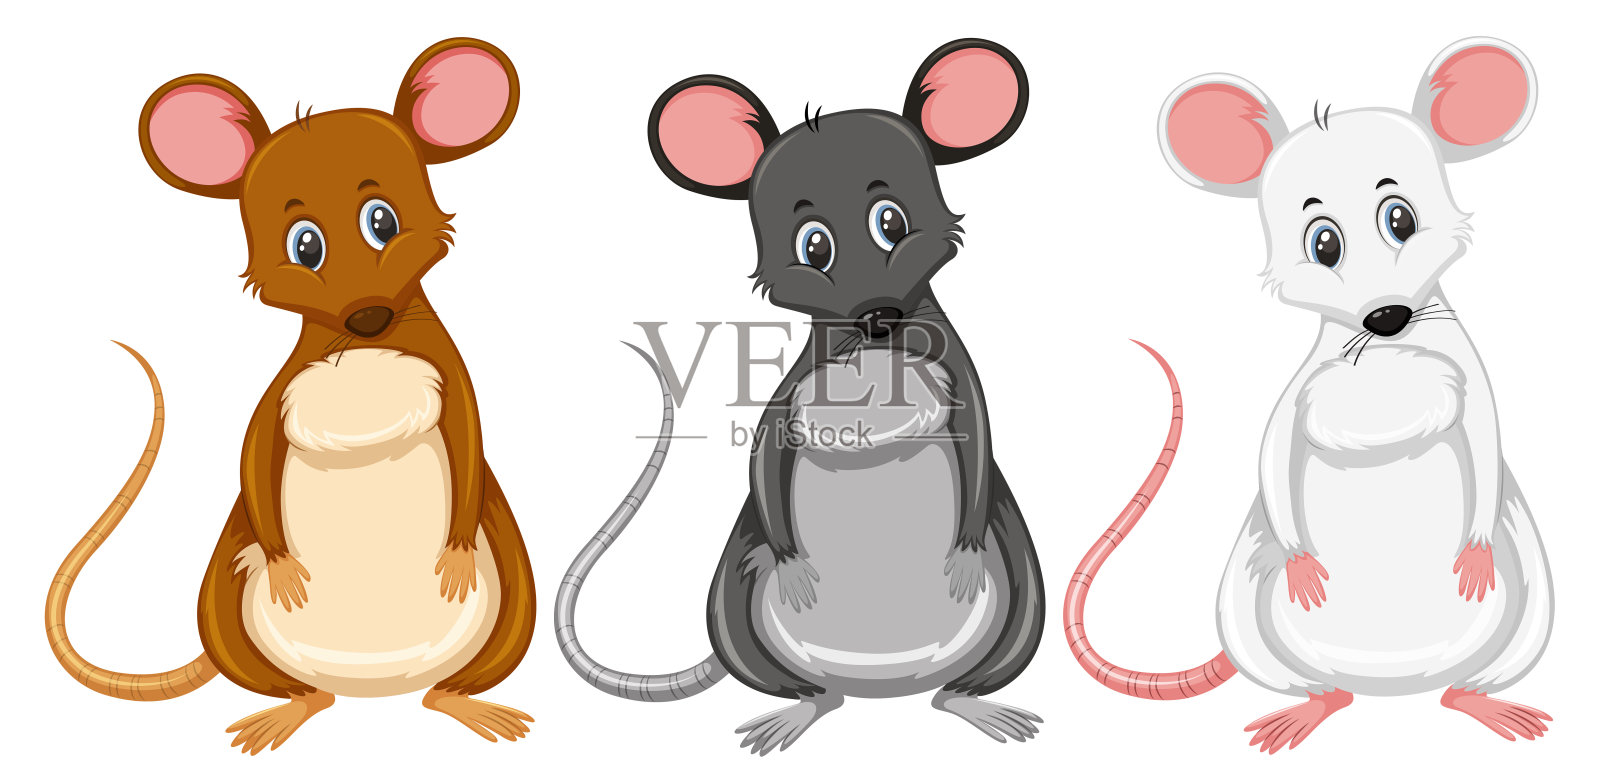 一组不同颜色的老鼠插画图片素材